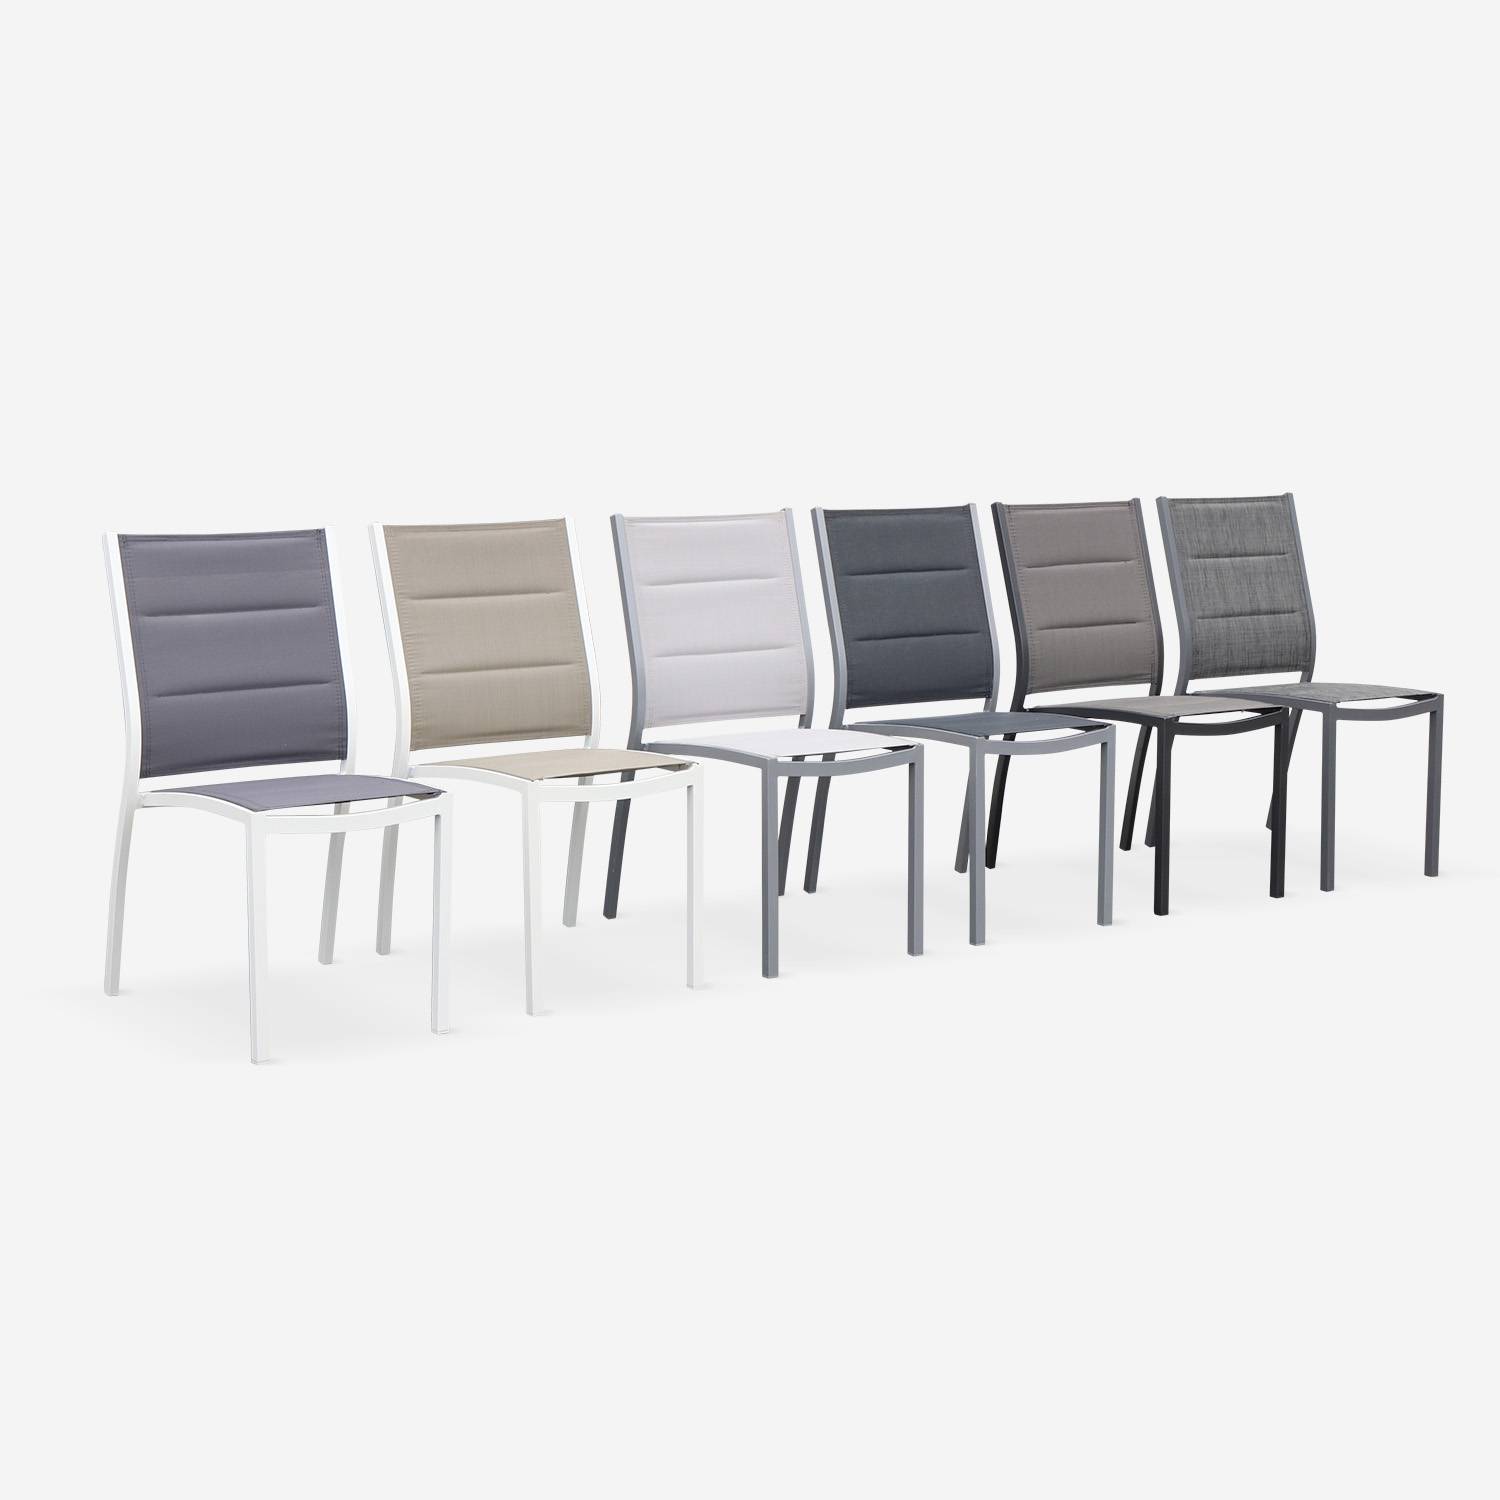 Coppia di sedie Chicago/Odenton in alluminio bianco e textilene colore marrone talpa,sweeek,Photo6